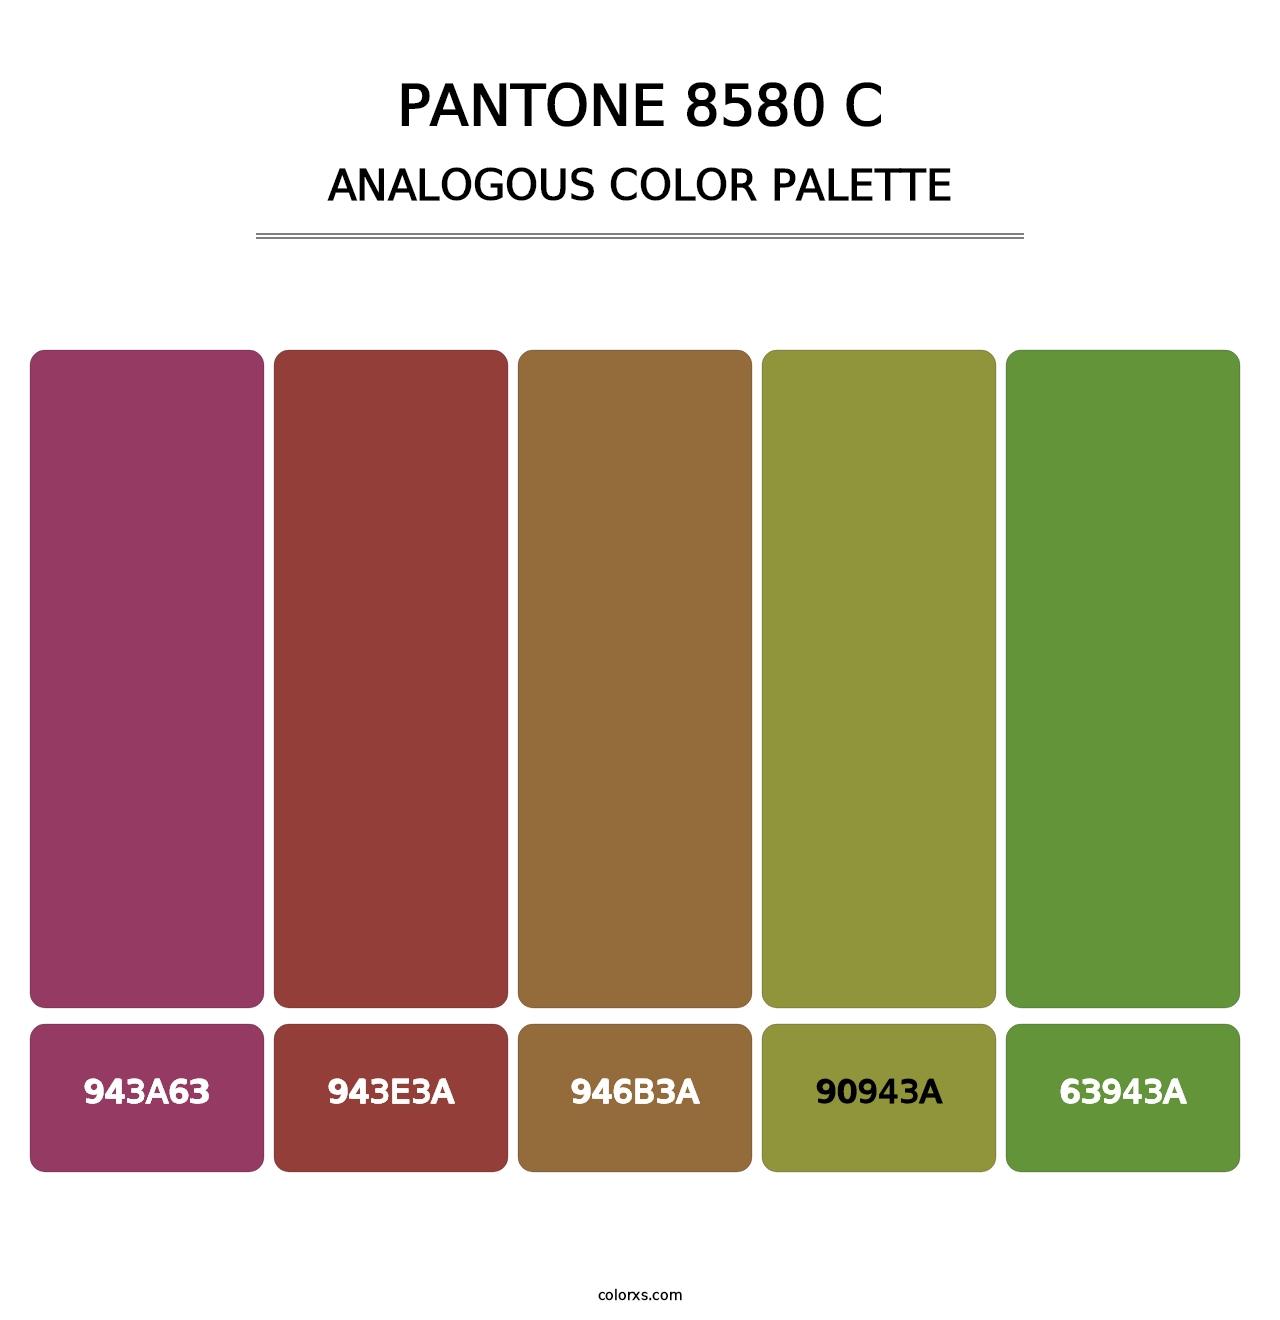 PANTONE 8580 C - Analogous Color Palette